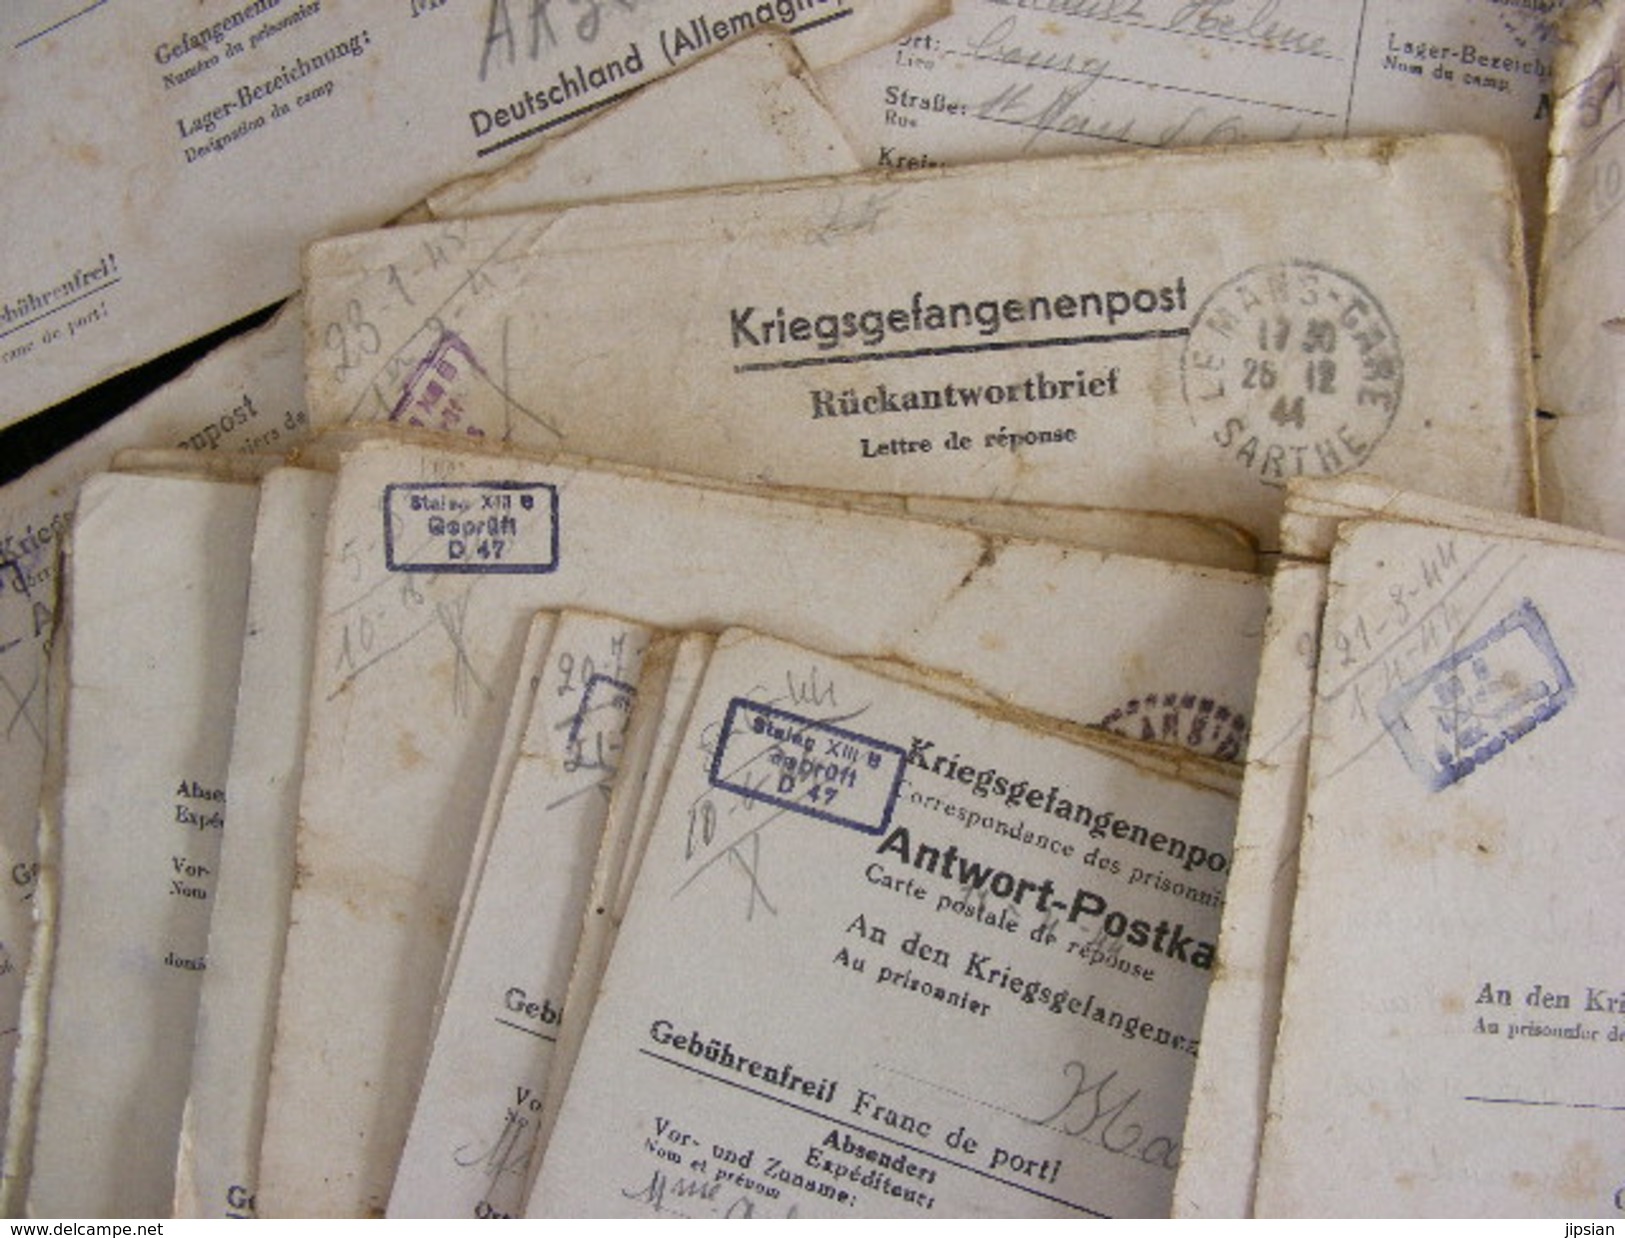 important lot de 256 lettres courriers reçues par un prisonnier de guerre au Stalag XIIIB en Allemagne de 1940 à 1945